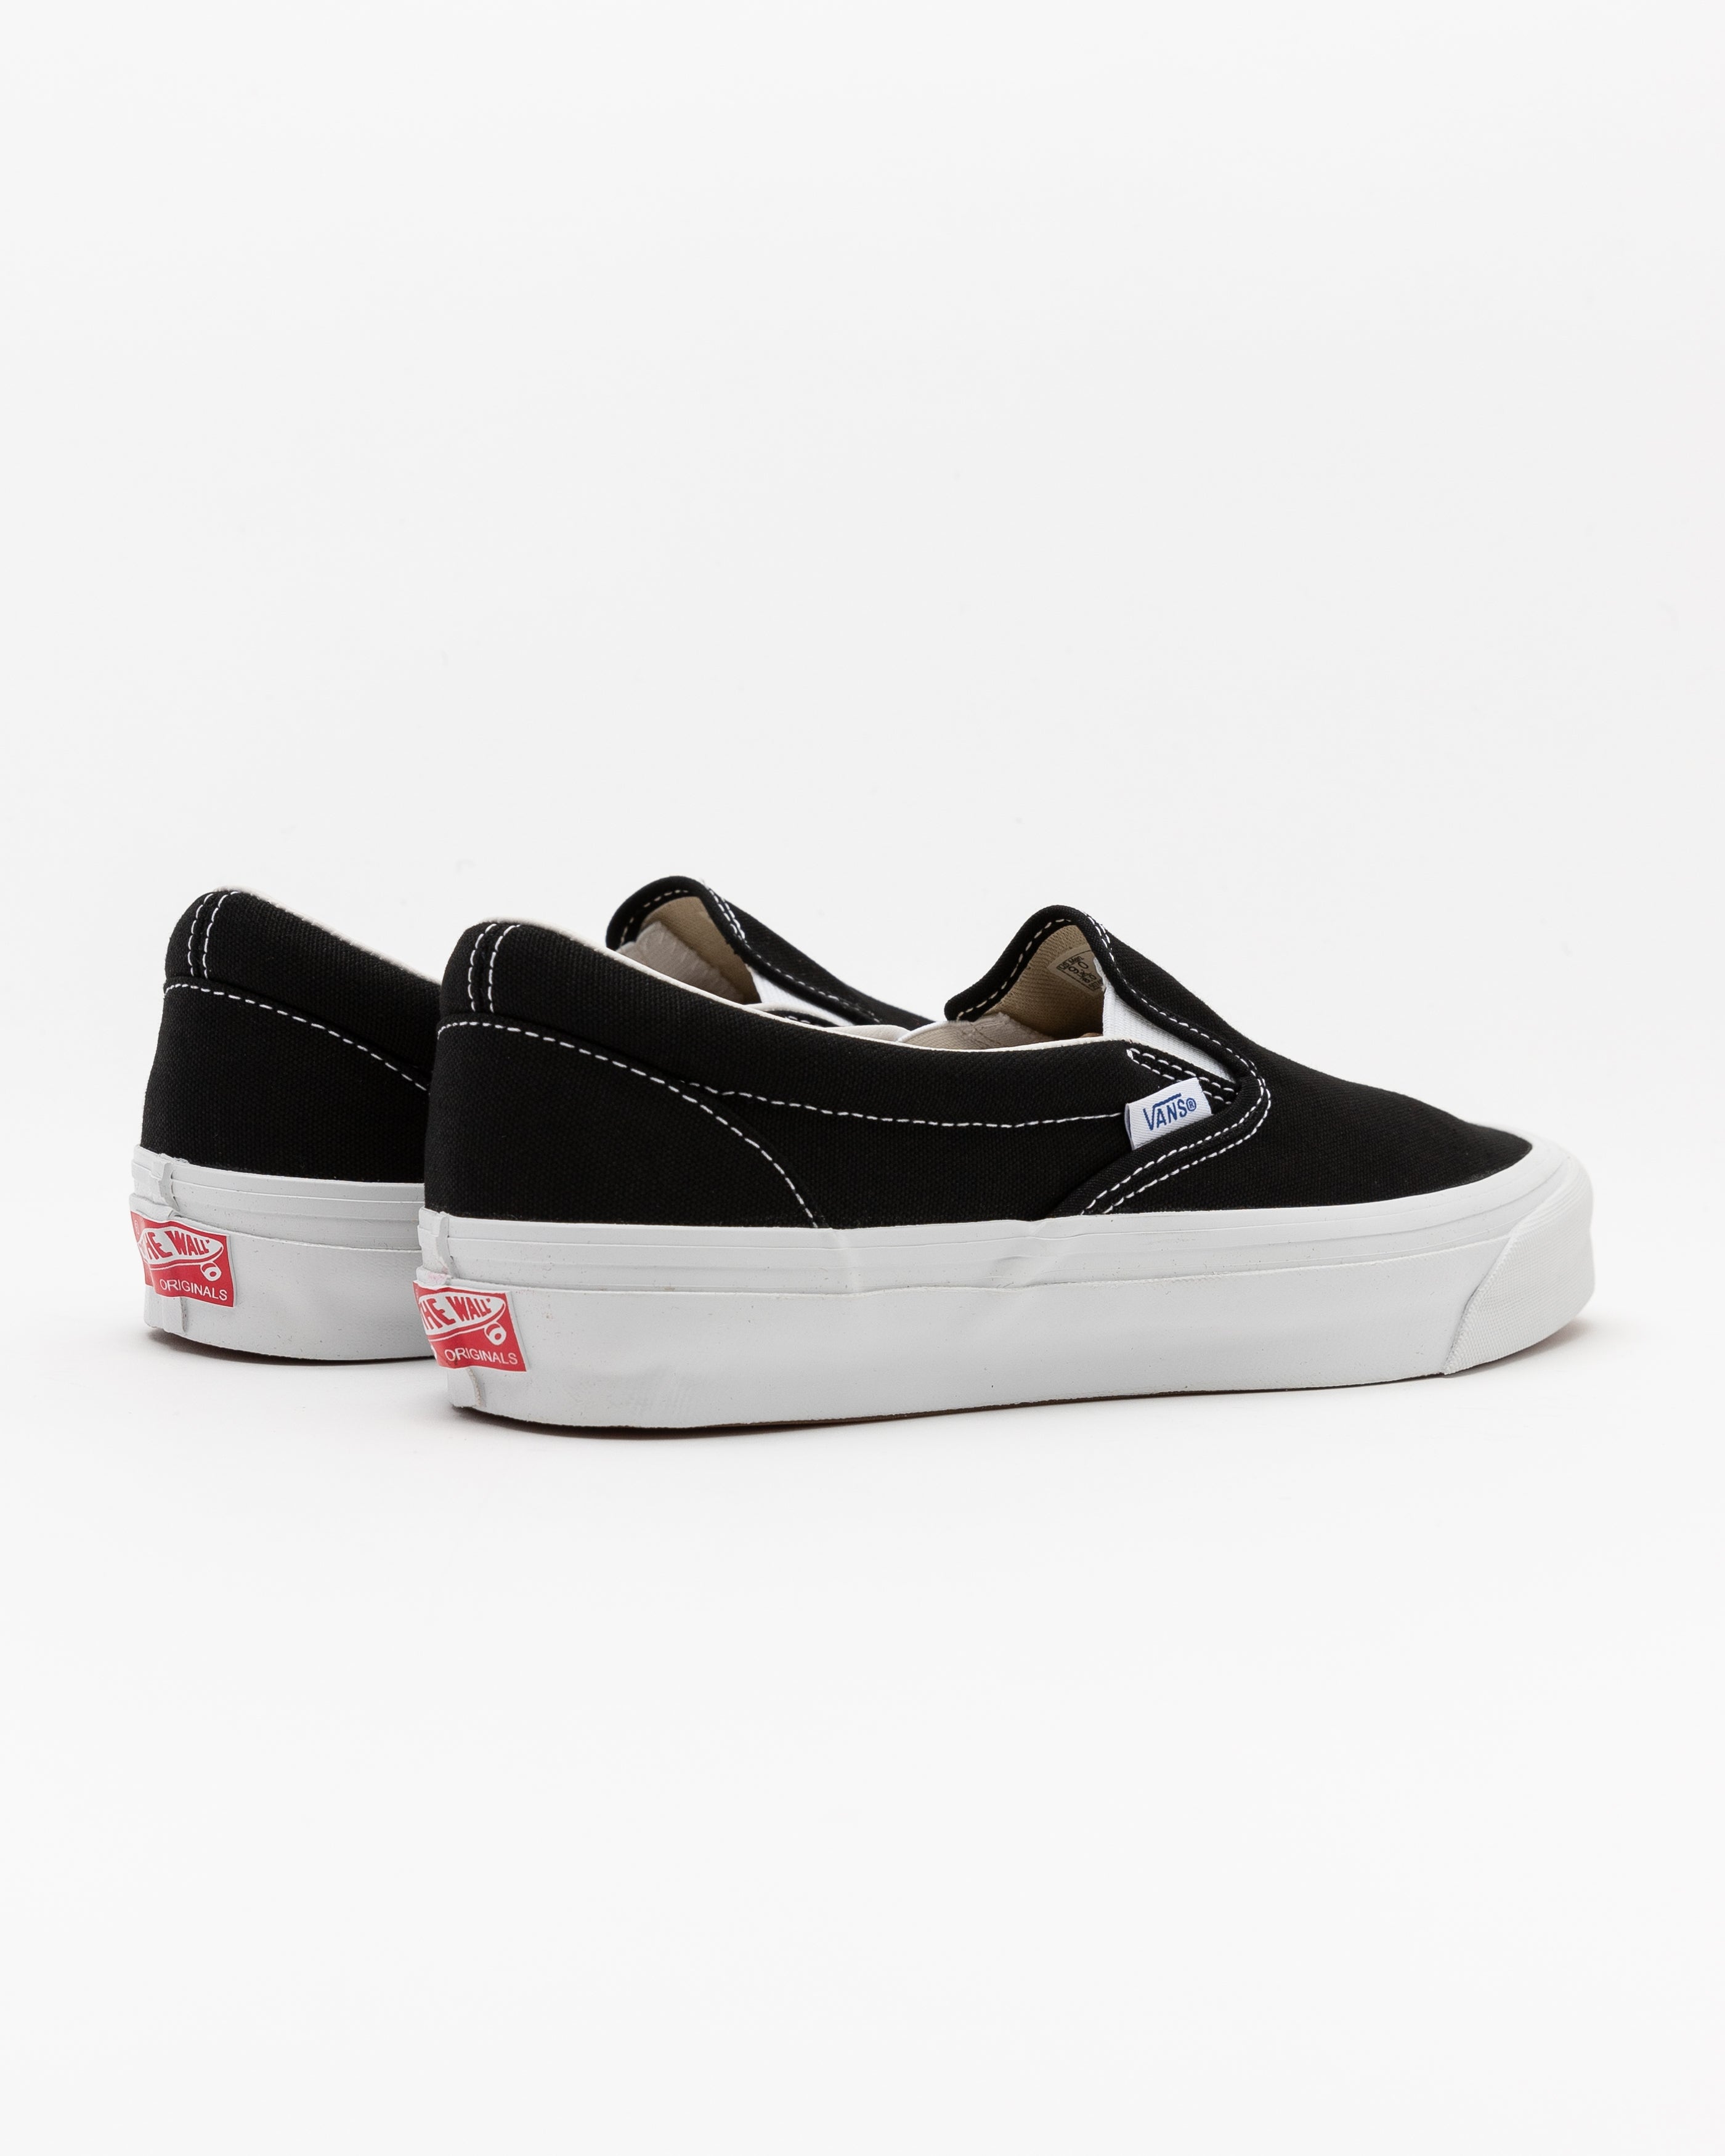 UA OG Classic Slip-On Sneakers in Black/White